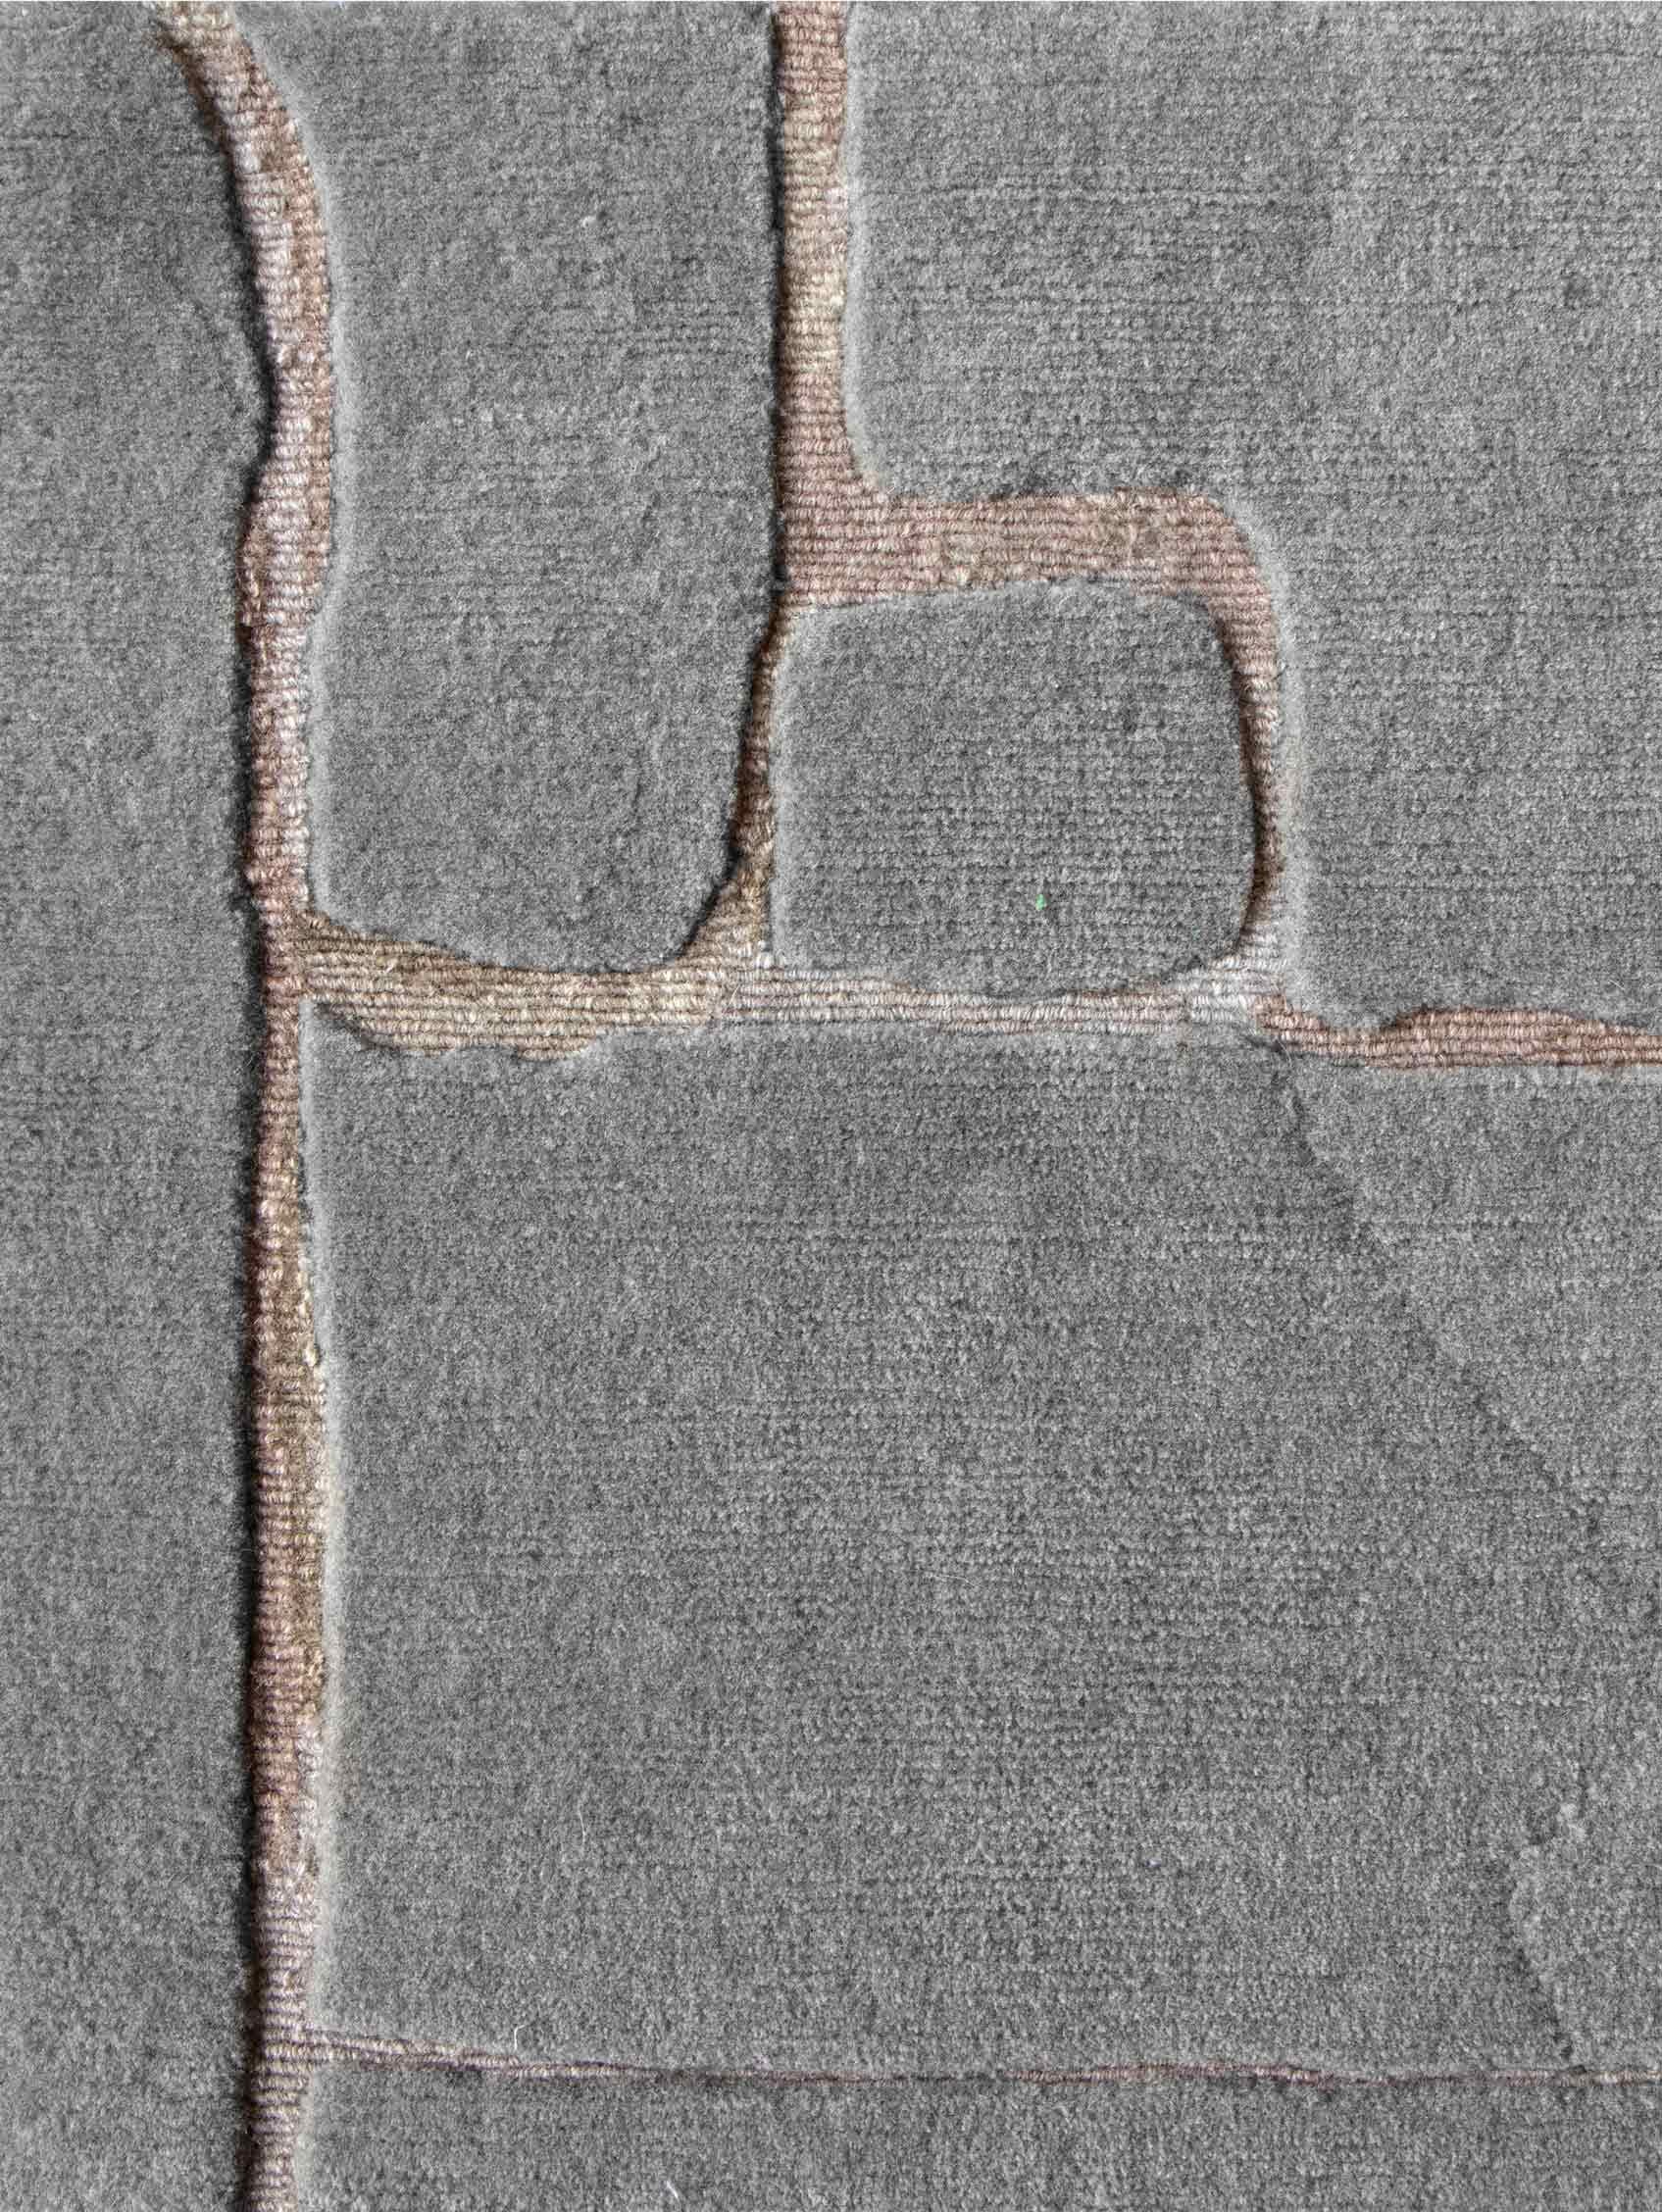 Motif du tapis : Portico - échelle de gris
MATERIAL : Laine de Nouvelle-Zélande
Qualité : Tissage croisé tibétain 
Taille : 8' x 10'
Fabriqué au Népal
Conçu par Eskayel.